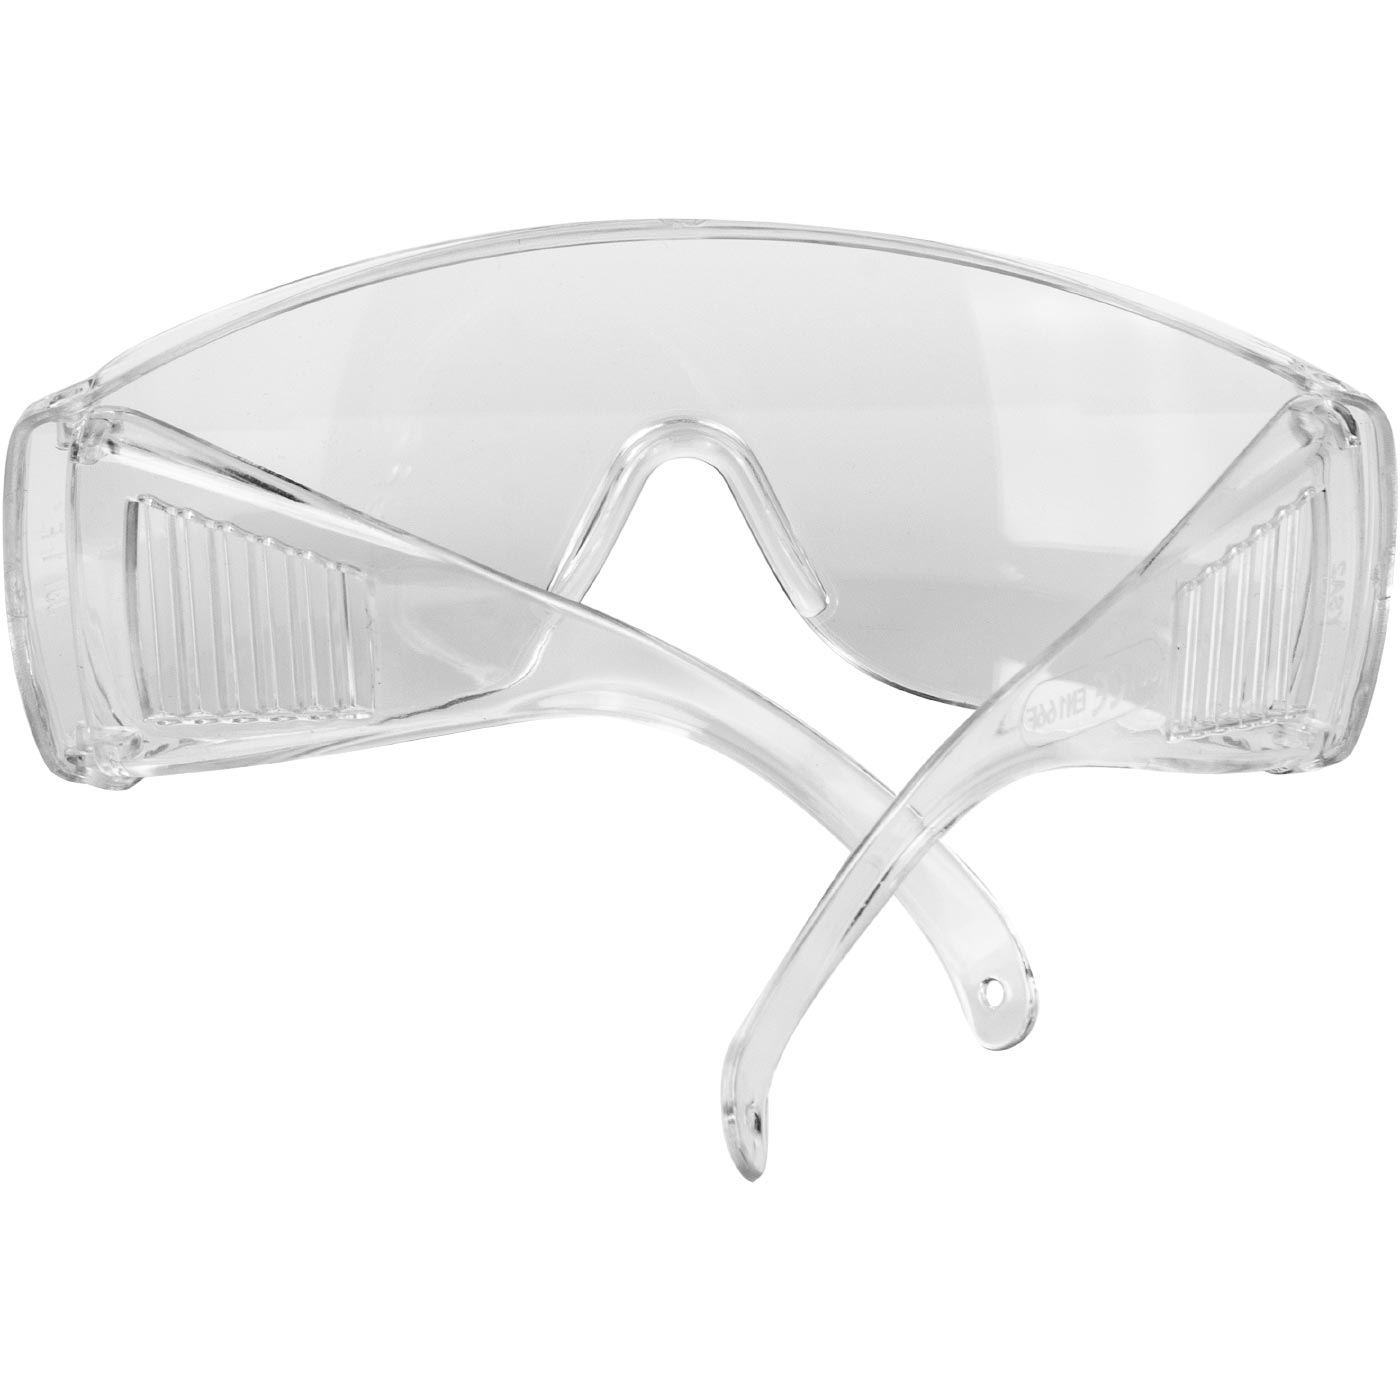 Okulary ochronne bezbarwne - ysa2 ce en166 | C0005 - Centrum Techniczne Gałązka